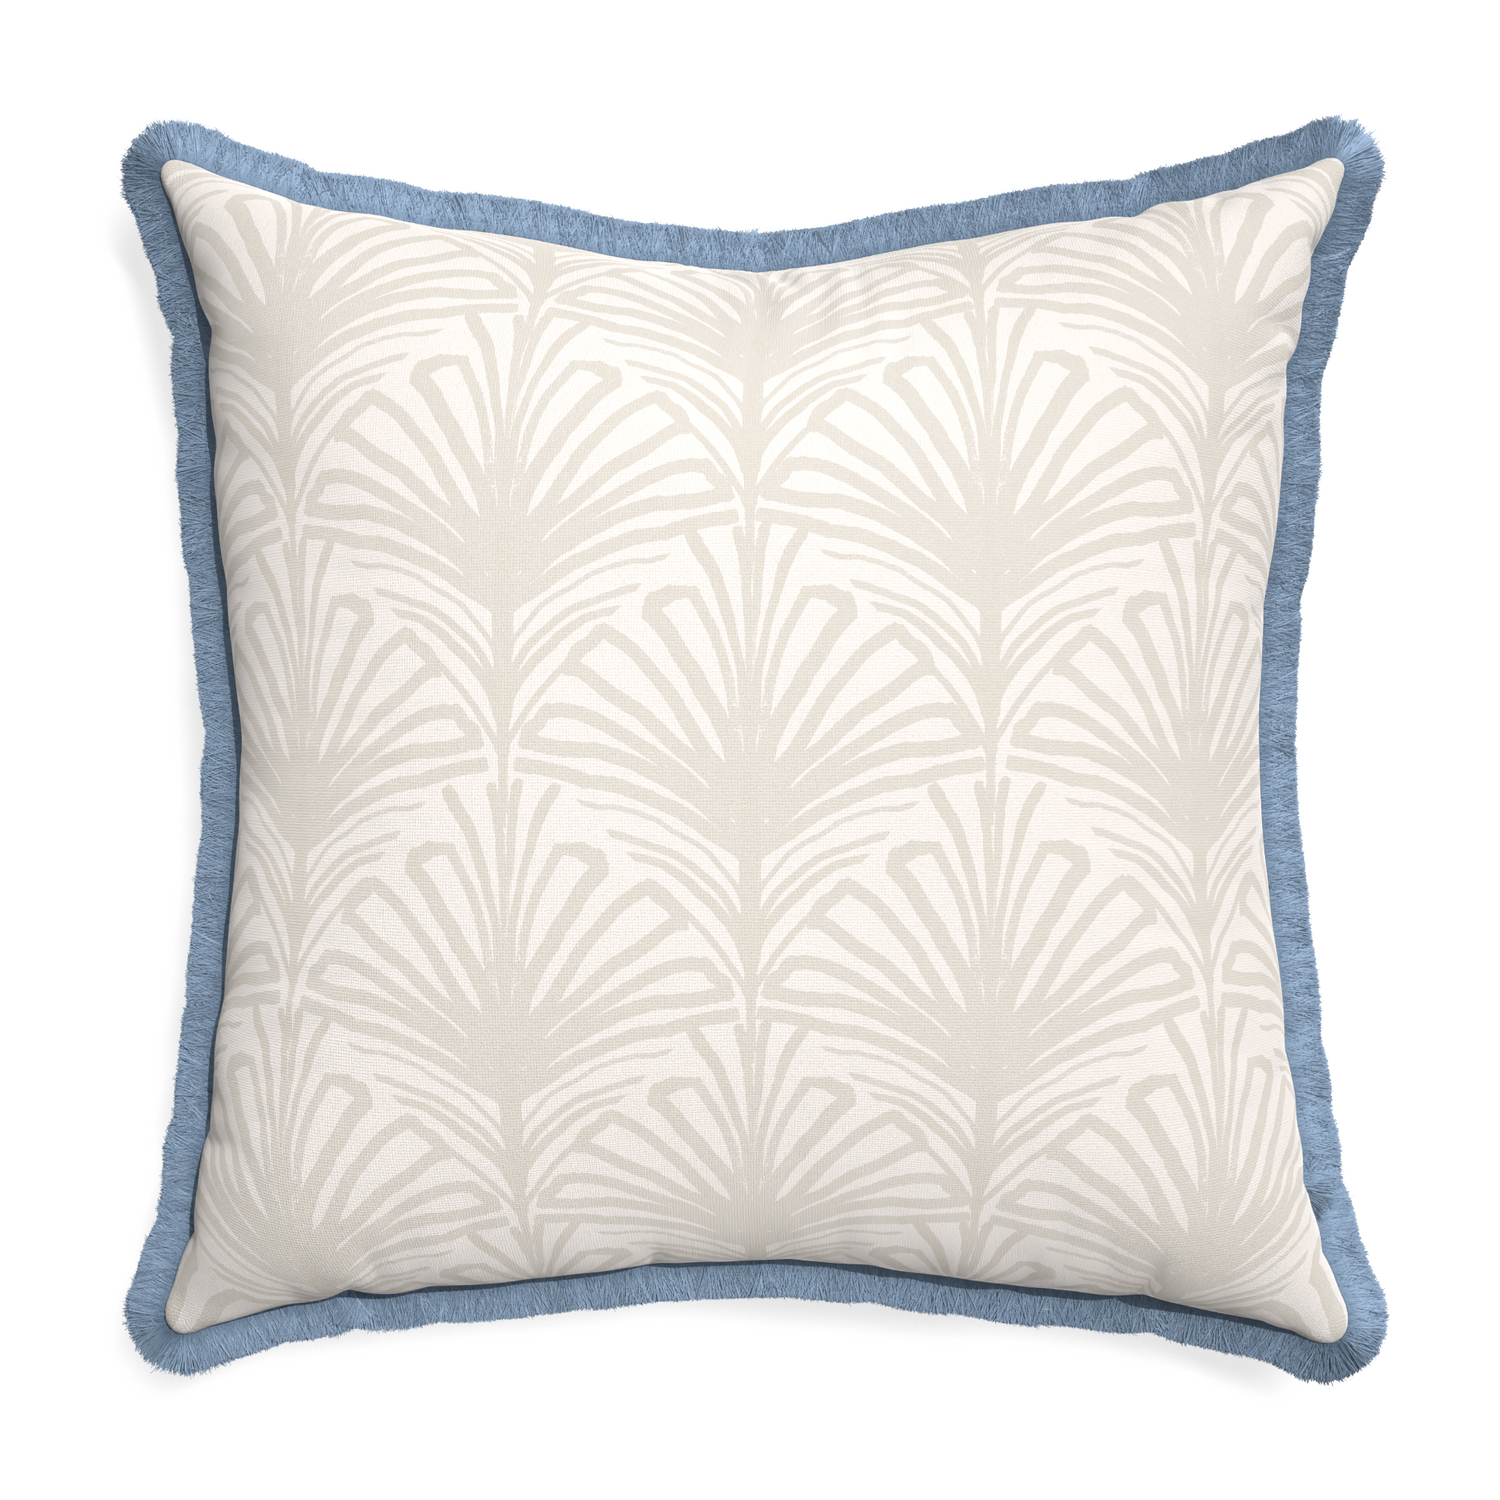 Euro-sham suzy sand custom pillow with sky fringe on white background